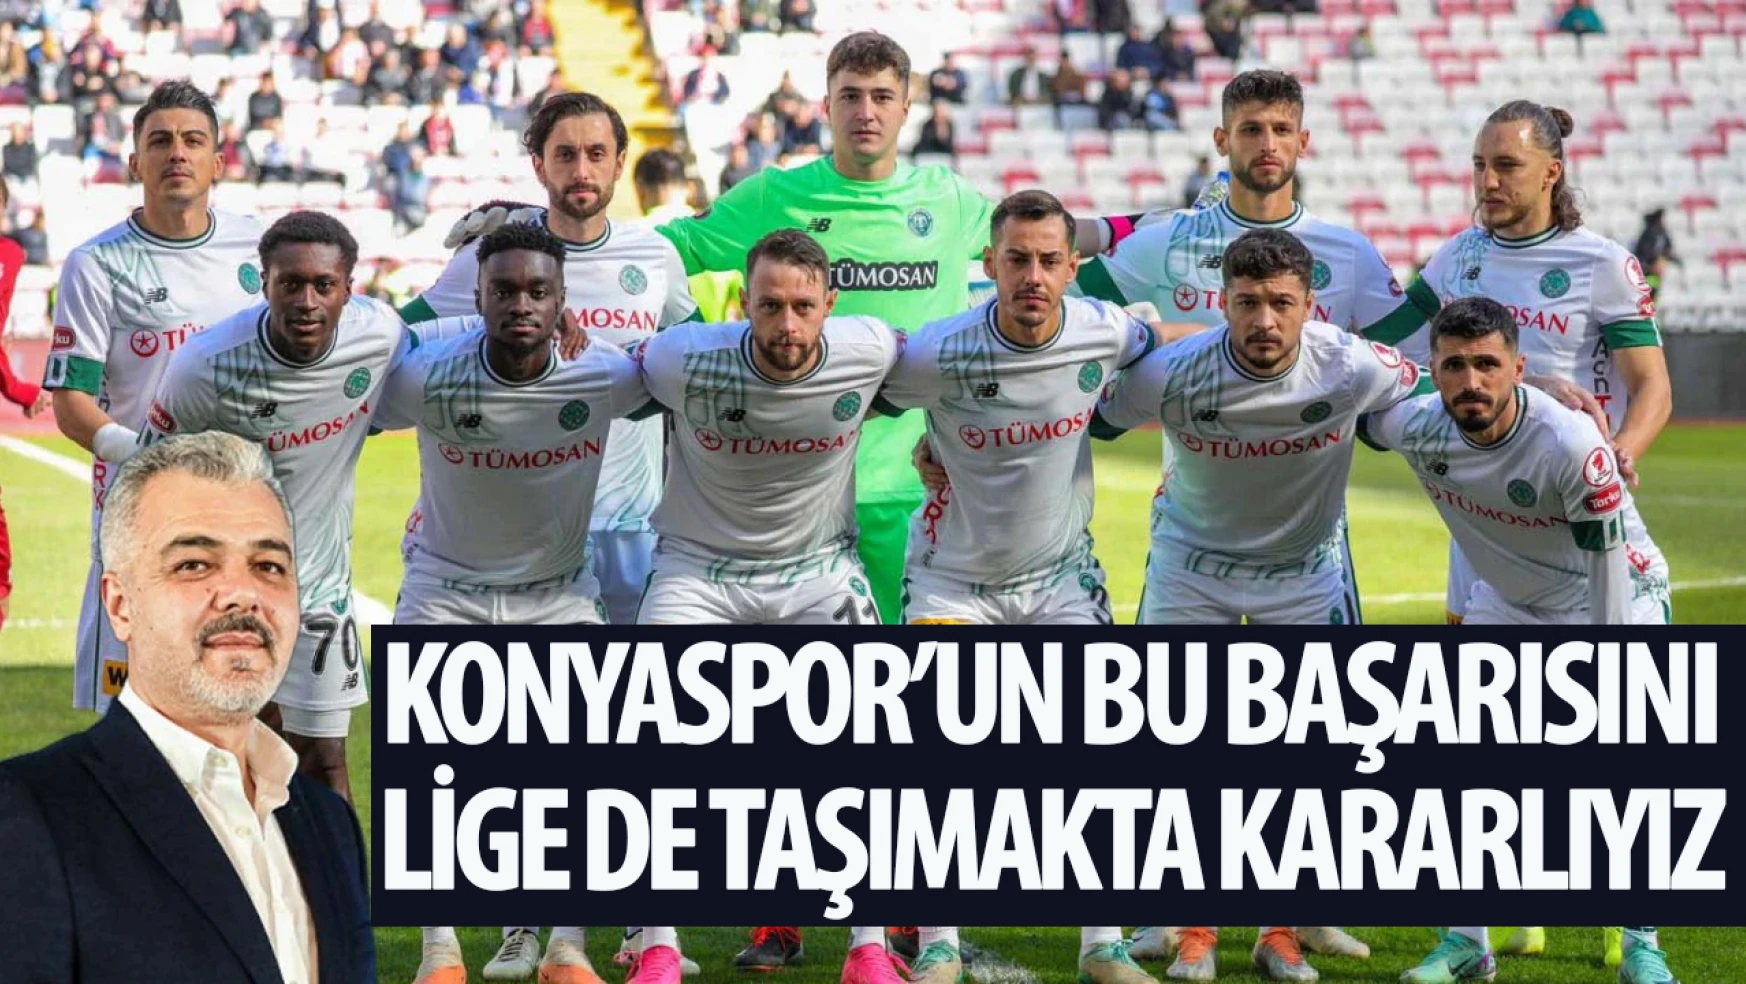 Derebağ: Konyaspor'un kupadaki başarısını lige de taşımakta kararlıyız